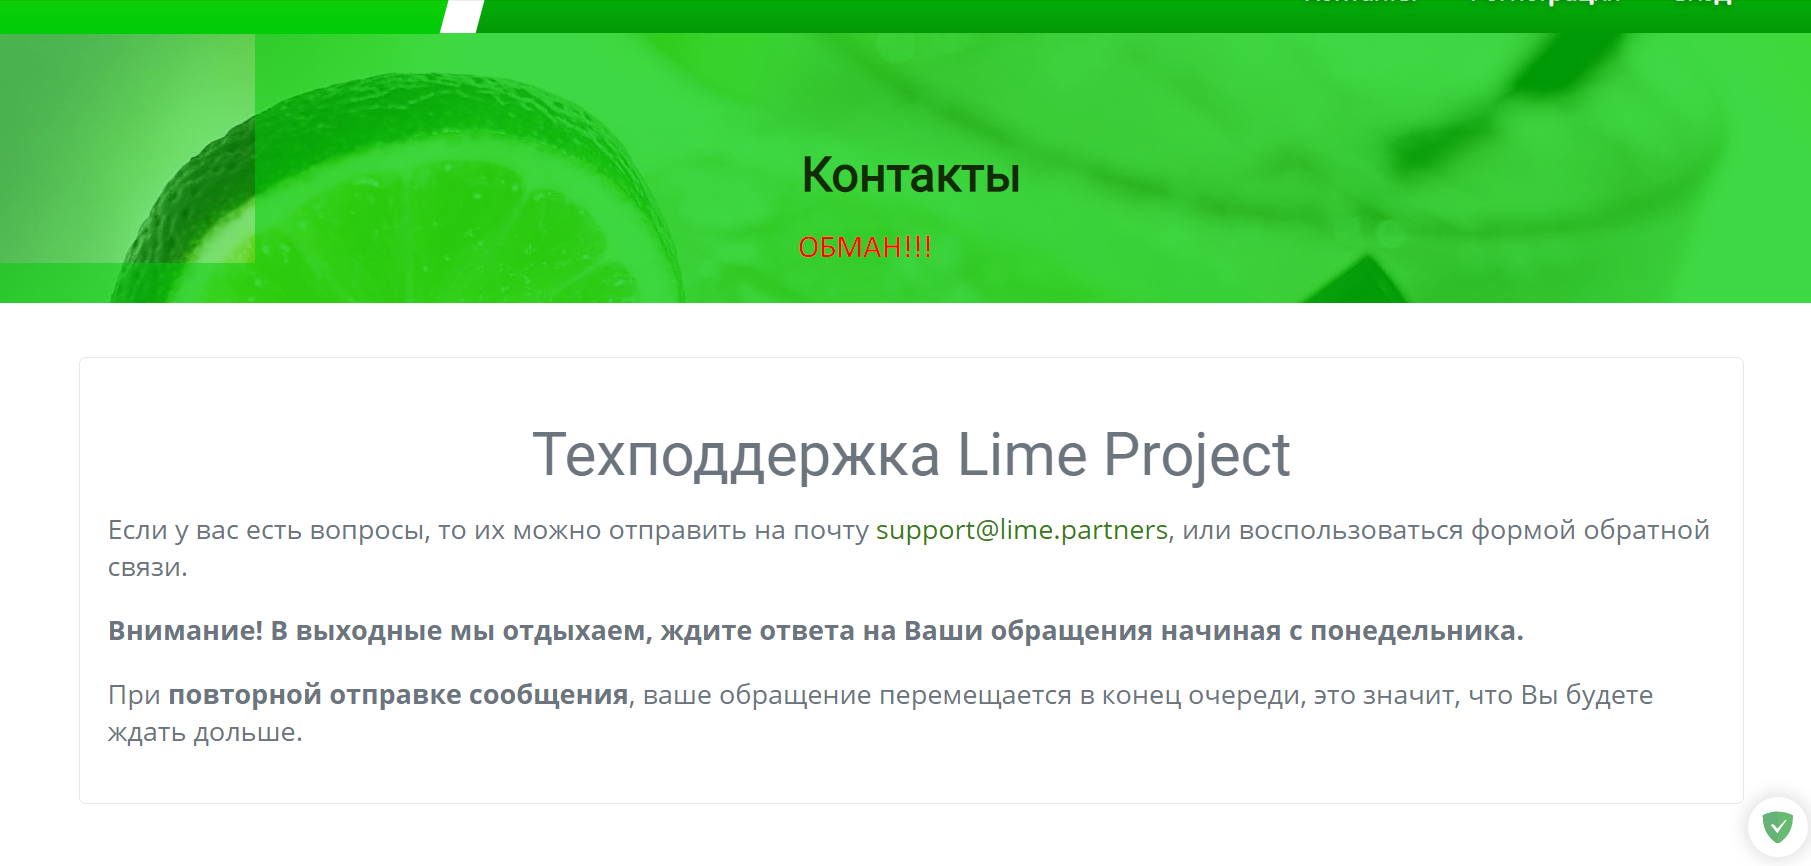 Компания Lime company контакты